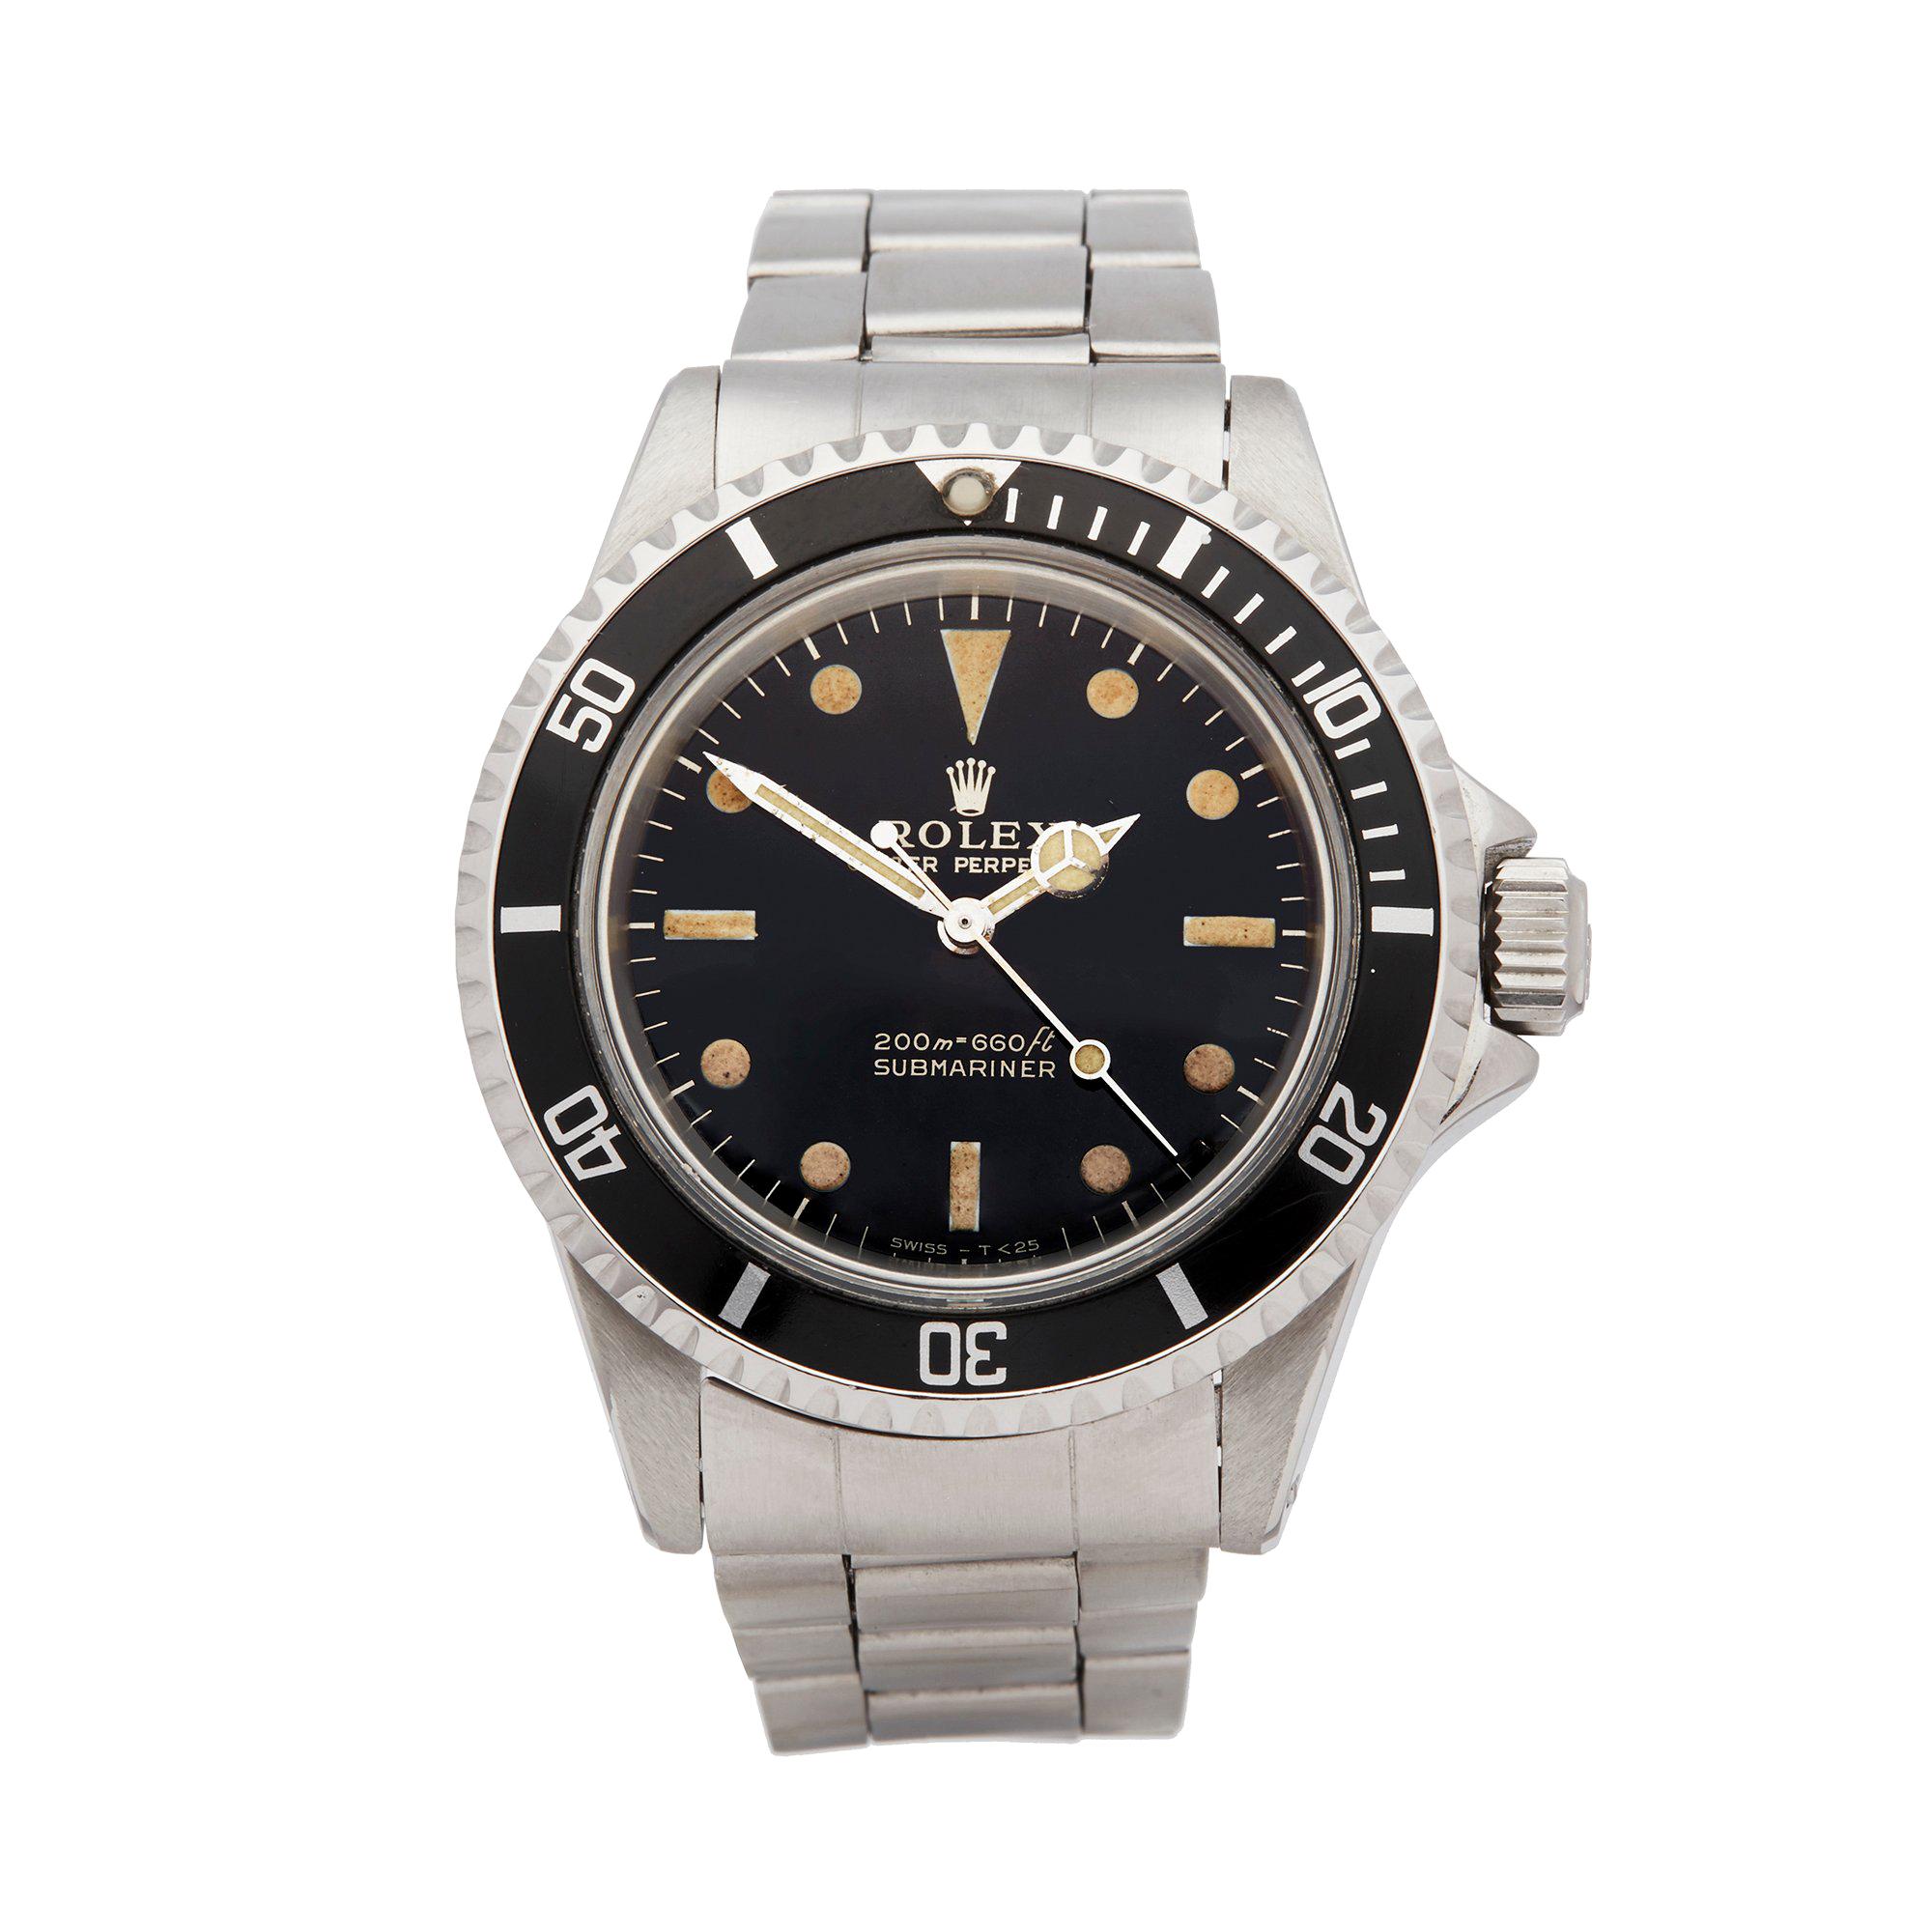 Rolex Submariner Stainless Steel 5513 Wristwatch